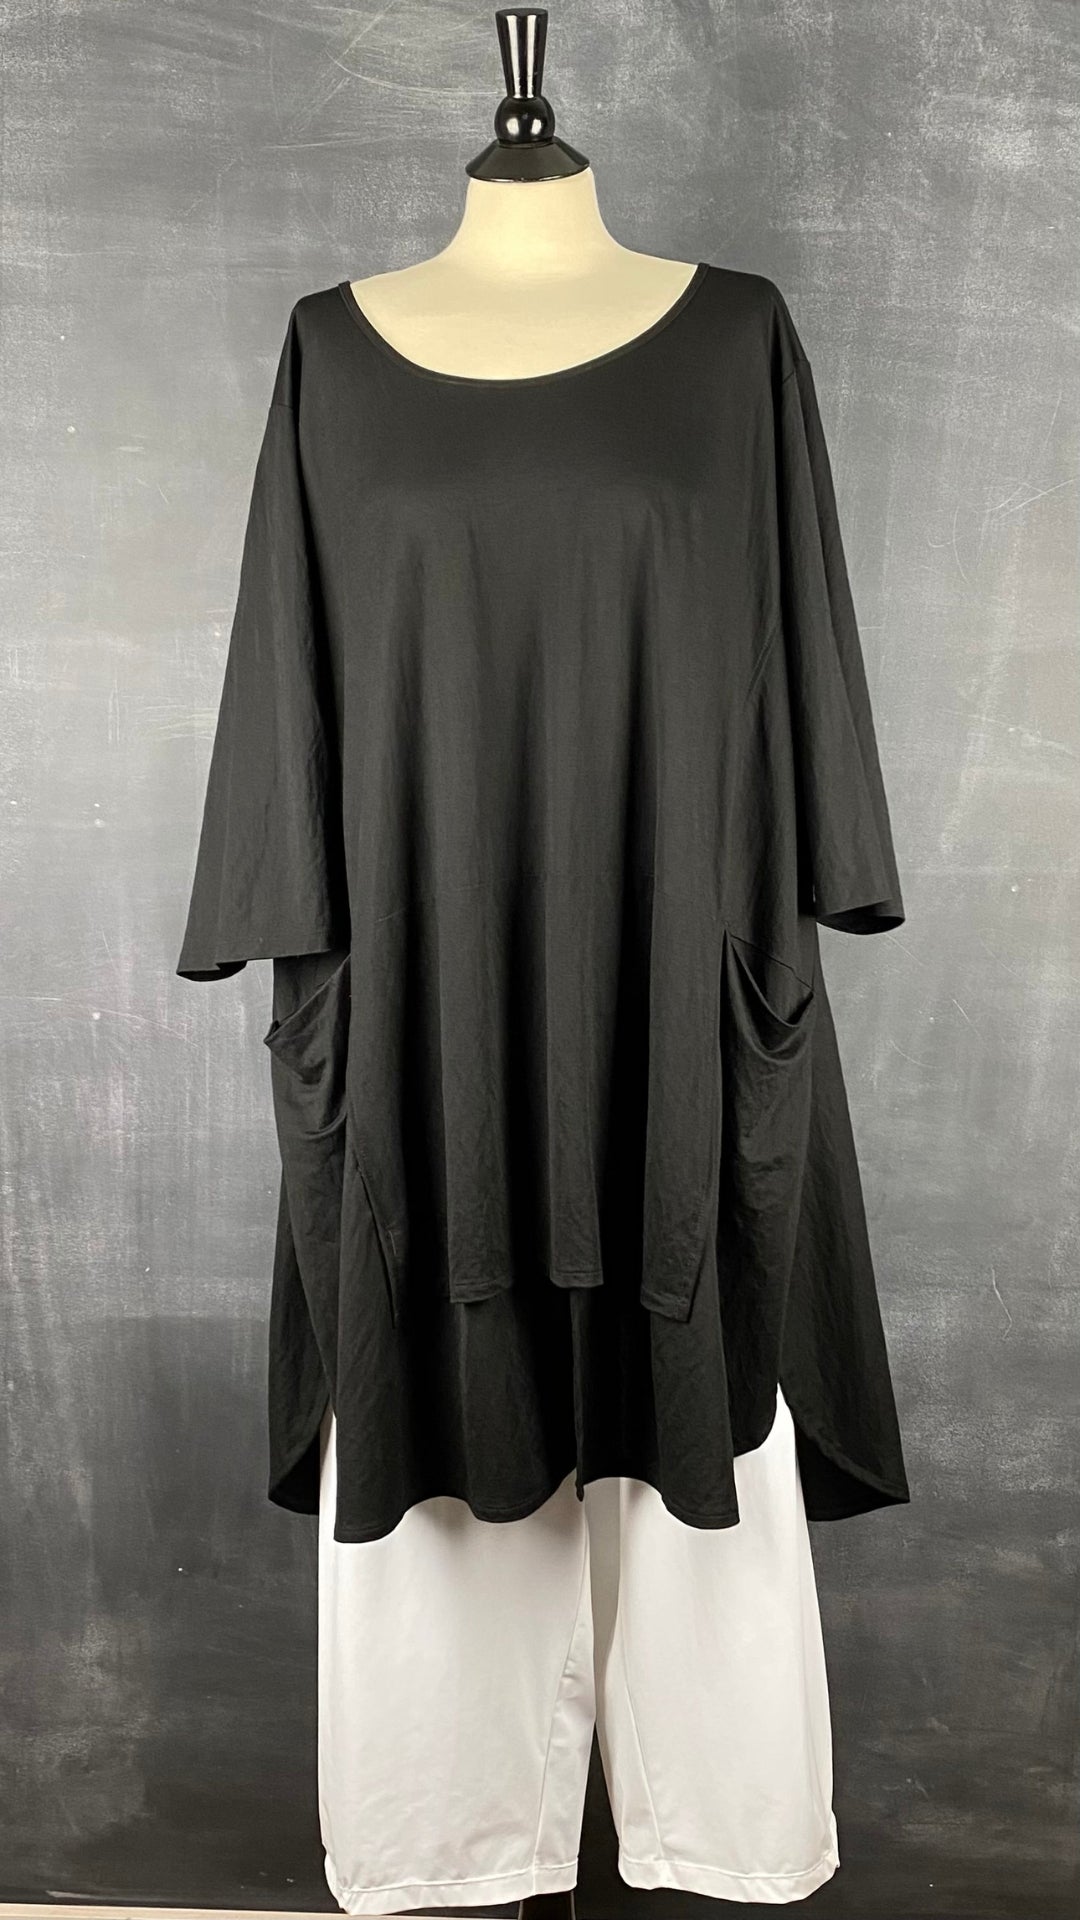 Tunique noire avec poches G!ozé, taille 5xl-6xl. Vue de l'agencement avec le pantalon blanc.